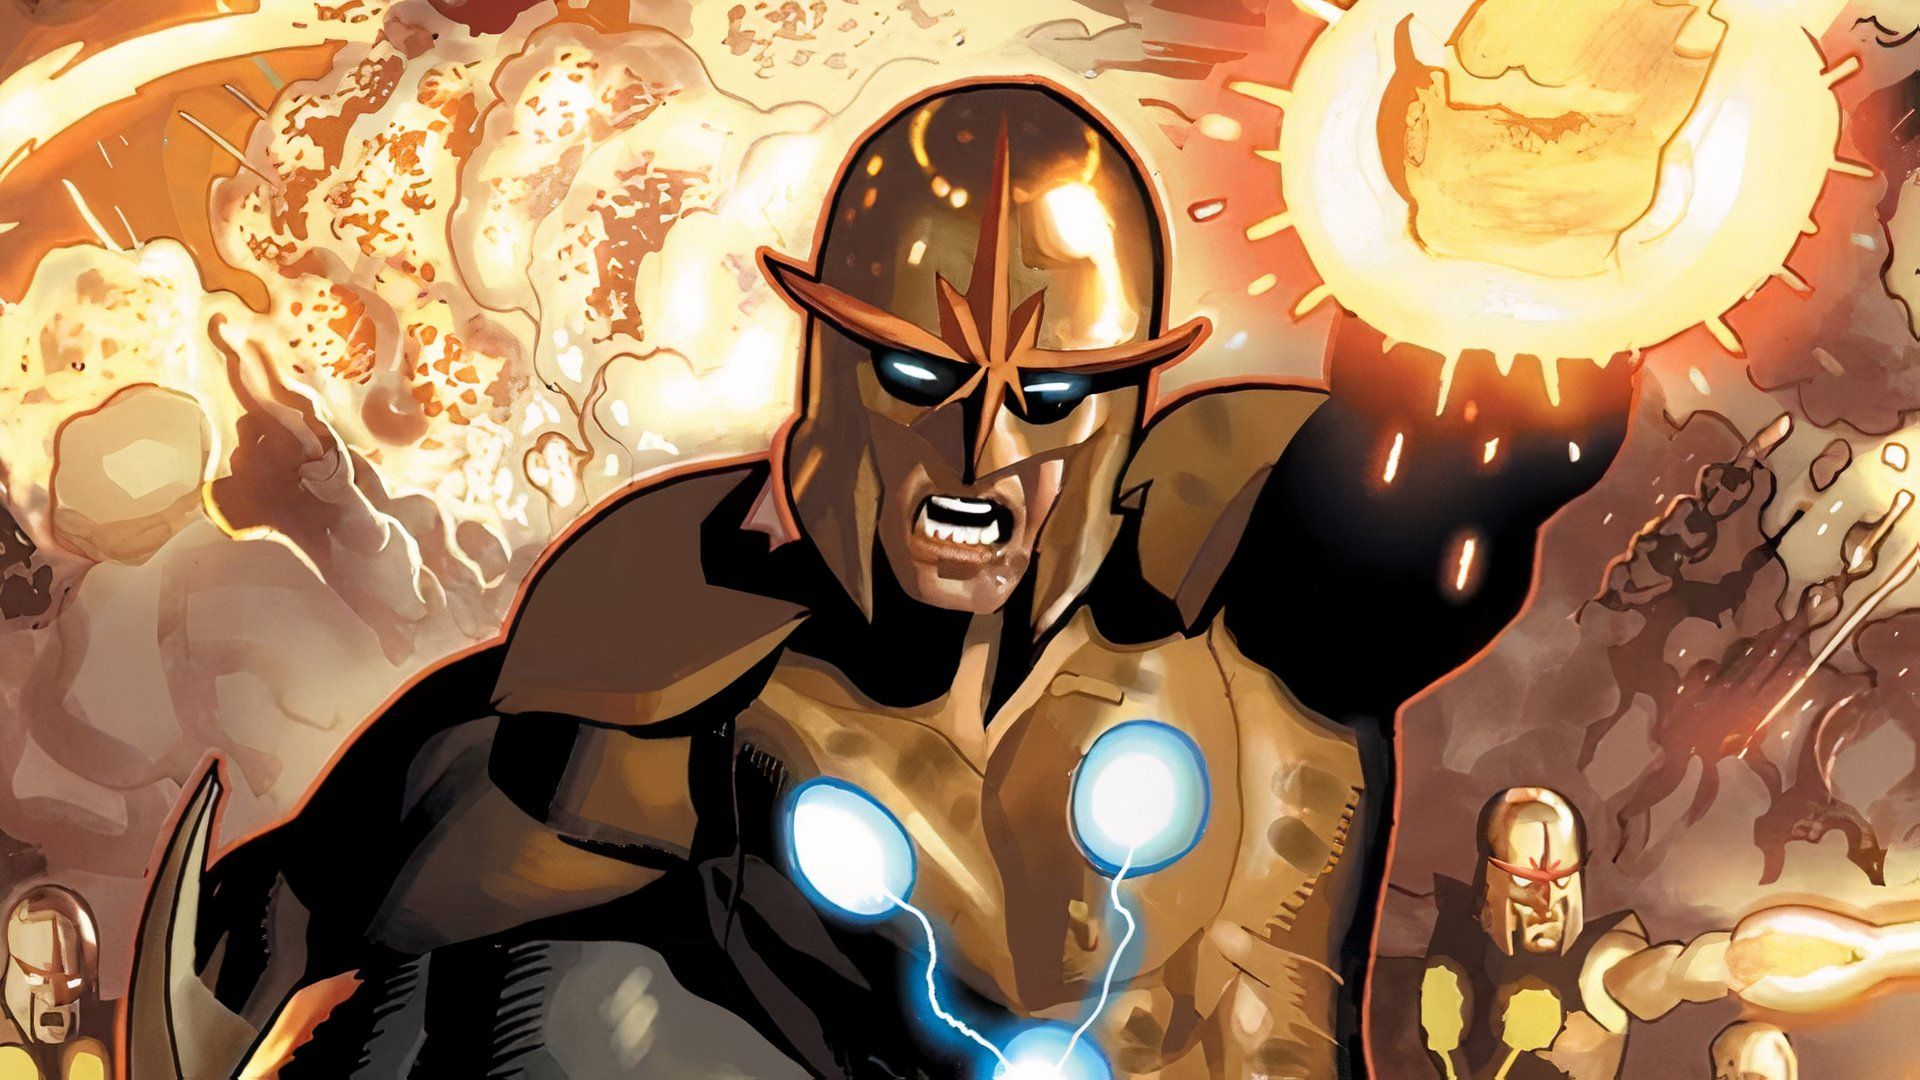 Marvels Nova получает захватывающее обновление производства и кастинга